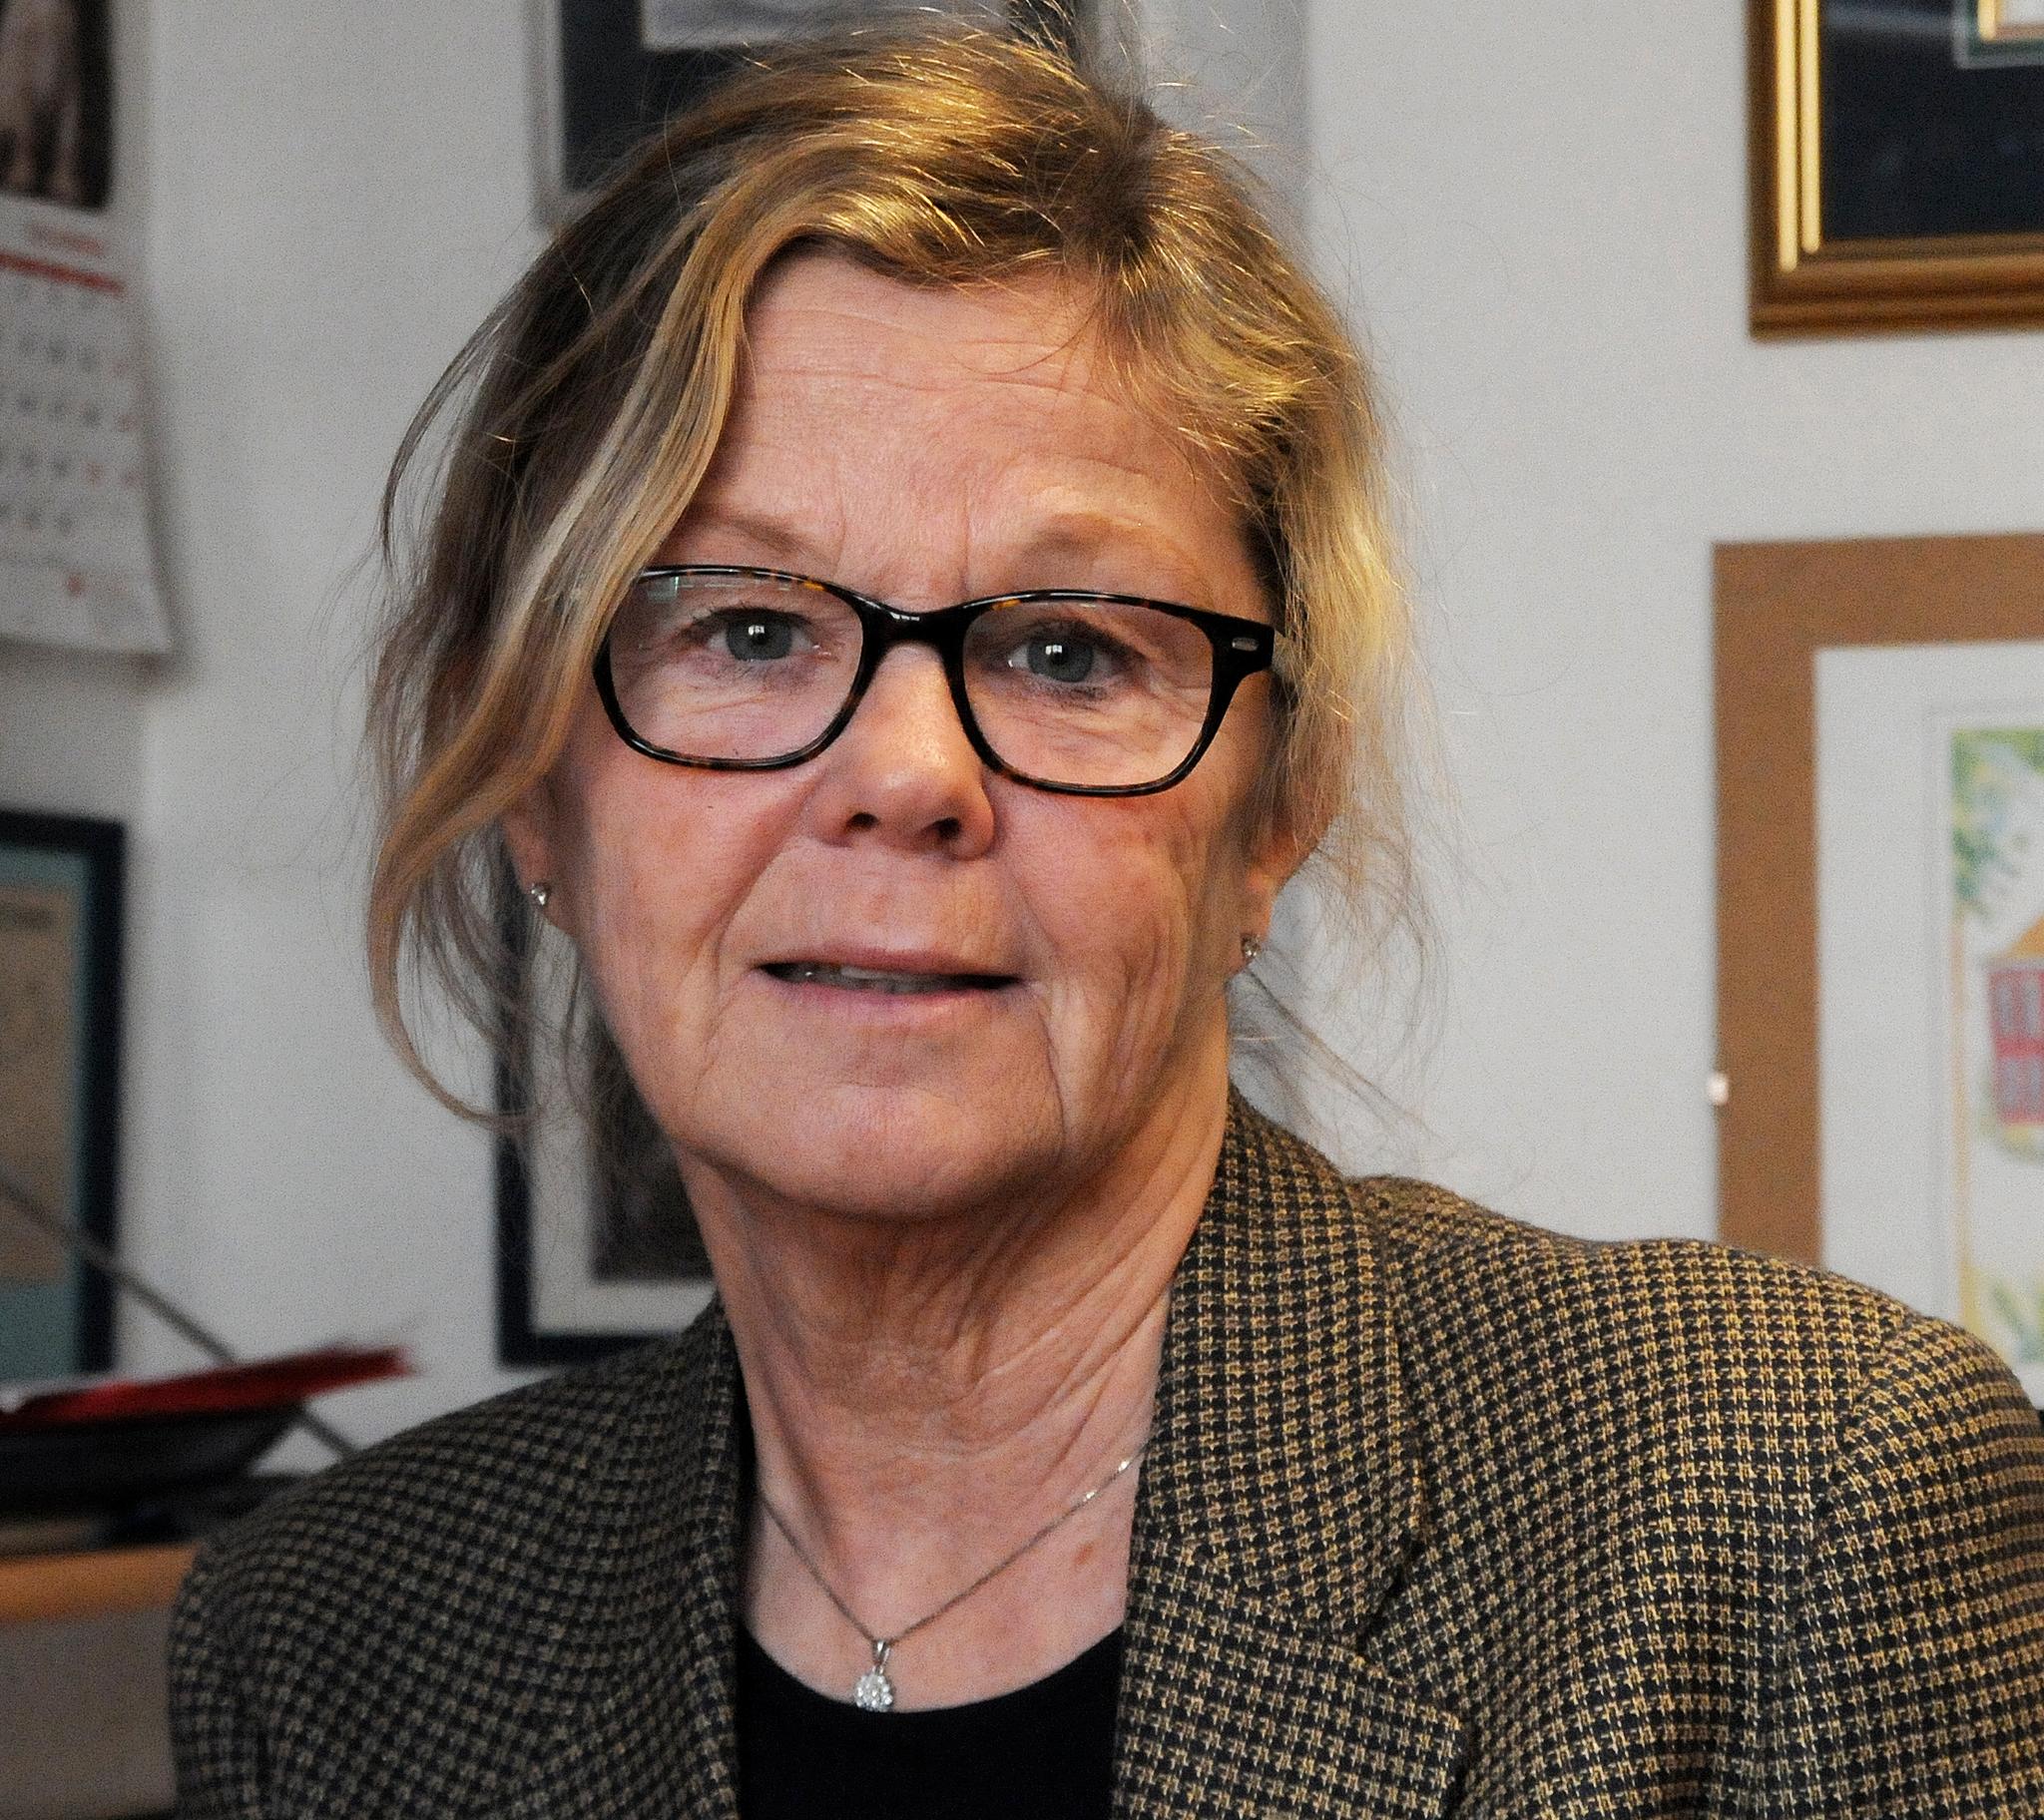 EKSPERT: Tone Strømøy har forsket mye på norske barnehager. Hun mener de er i verdensklasse.